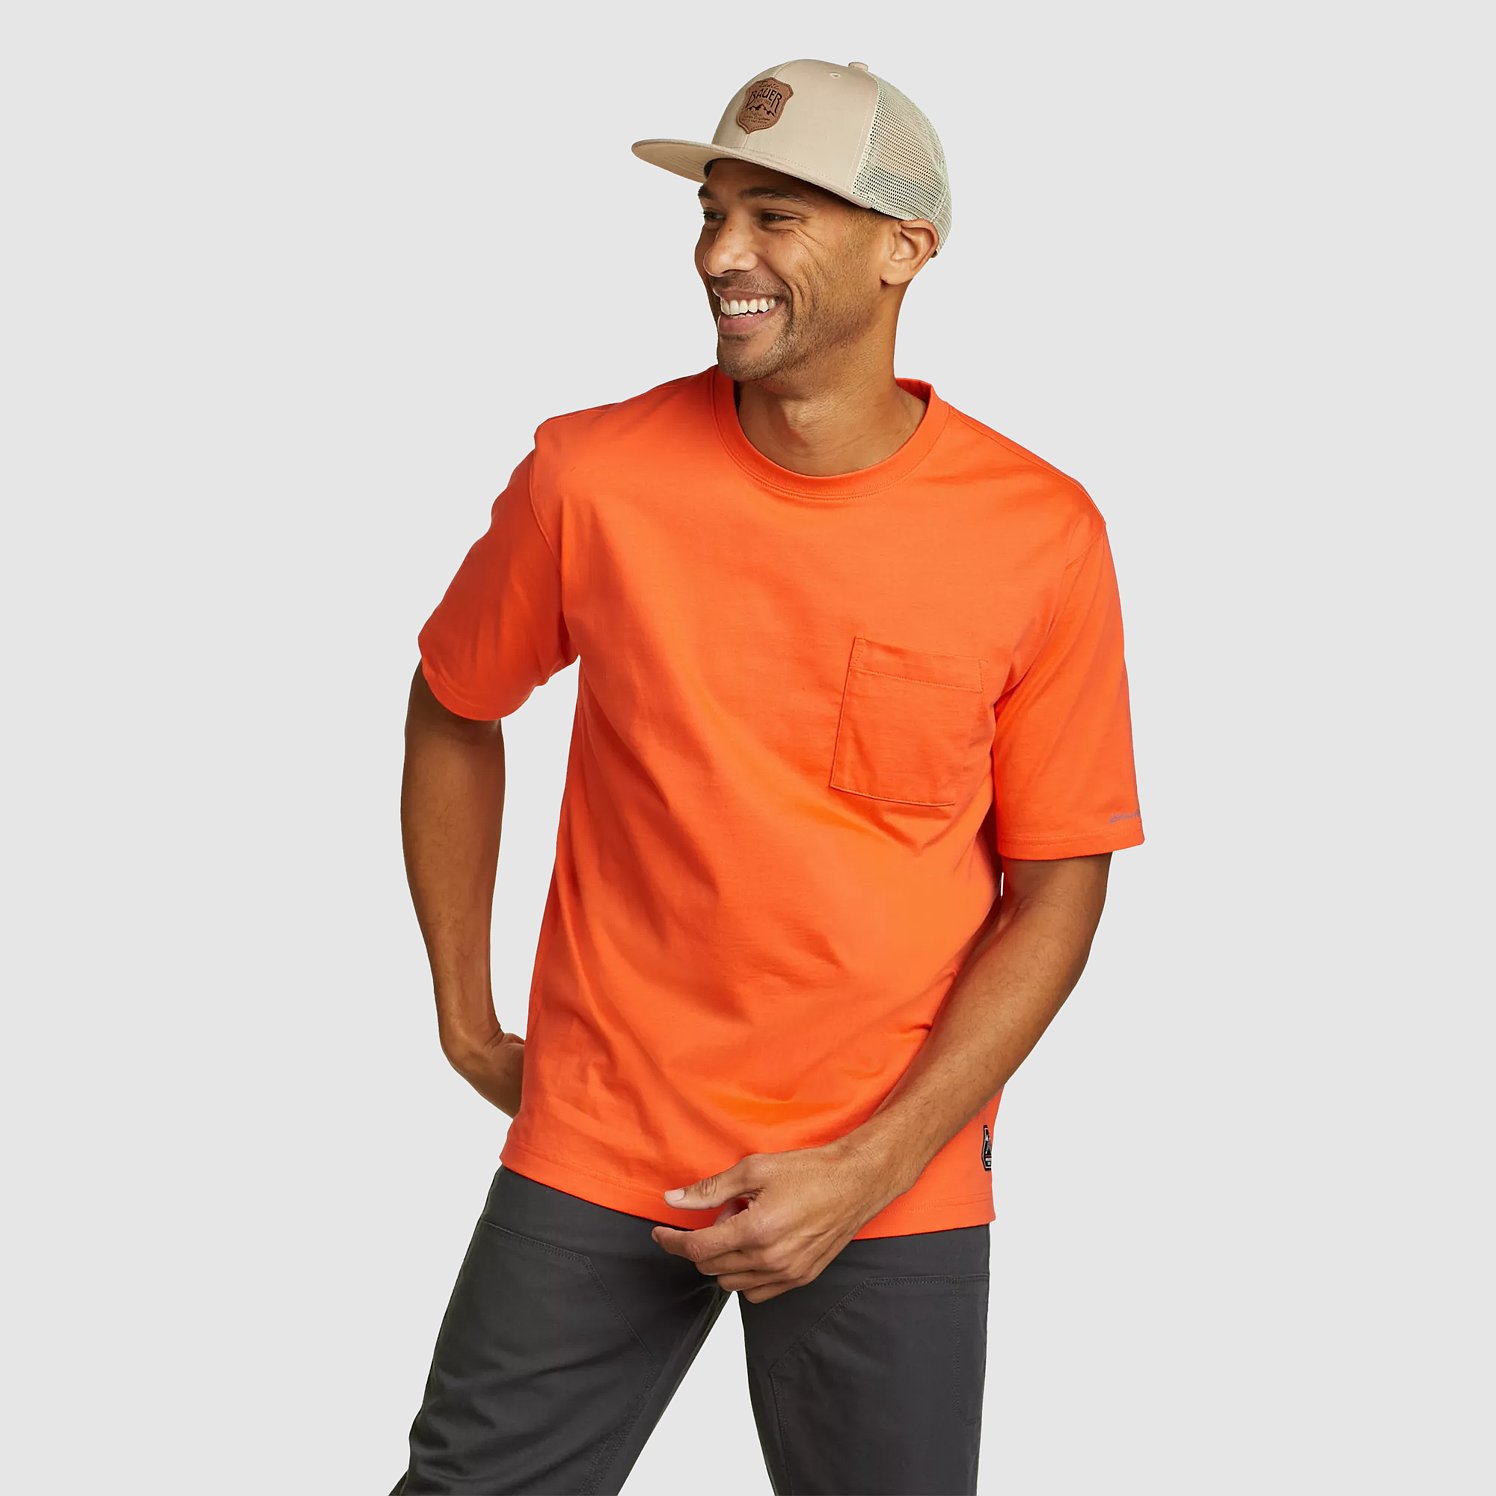 Eddie Bauer Men's Mountain Ops Short-Sleeve T-Shirt - Orange - Size L